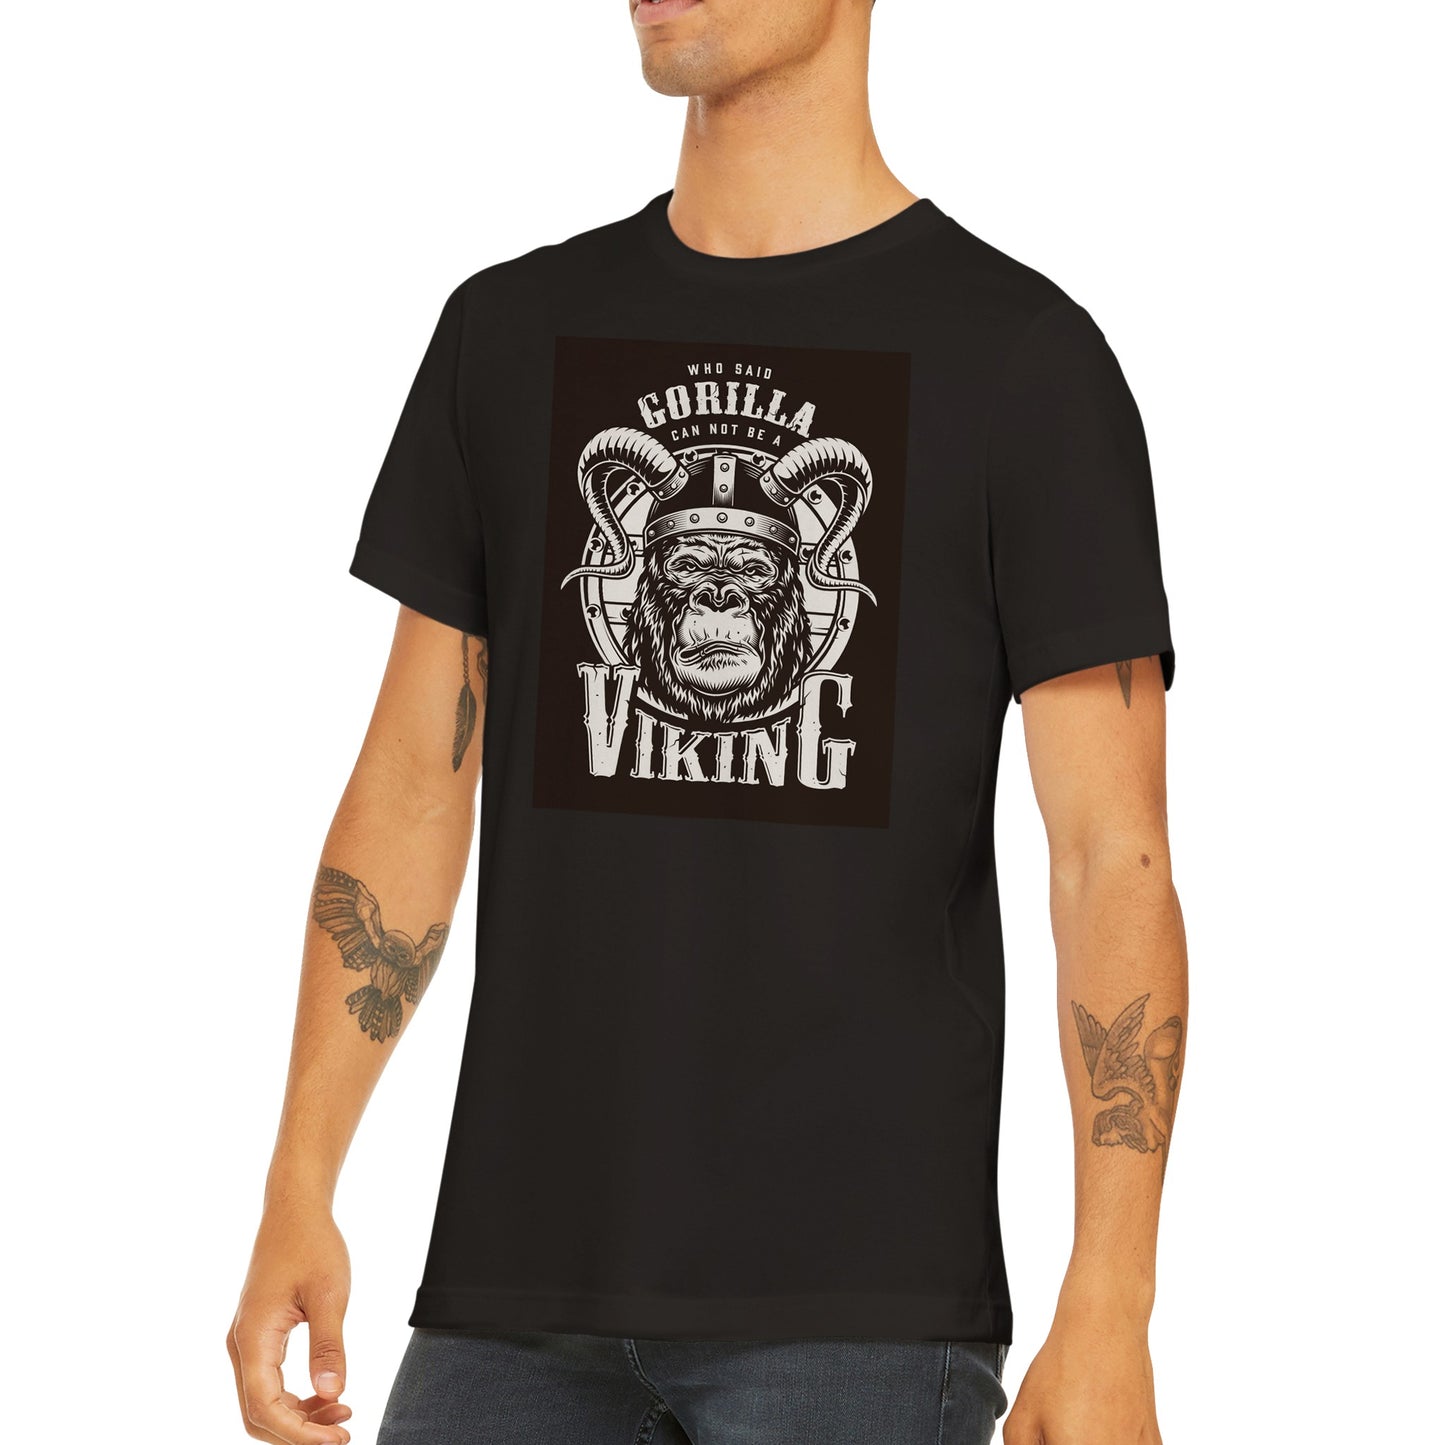 Gorilla Viking T-shirt